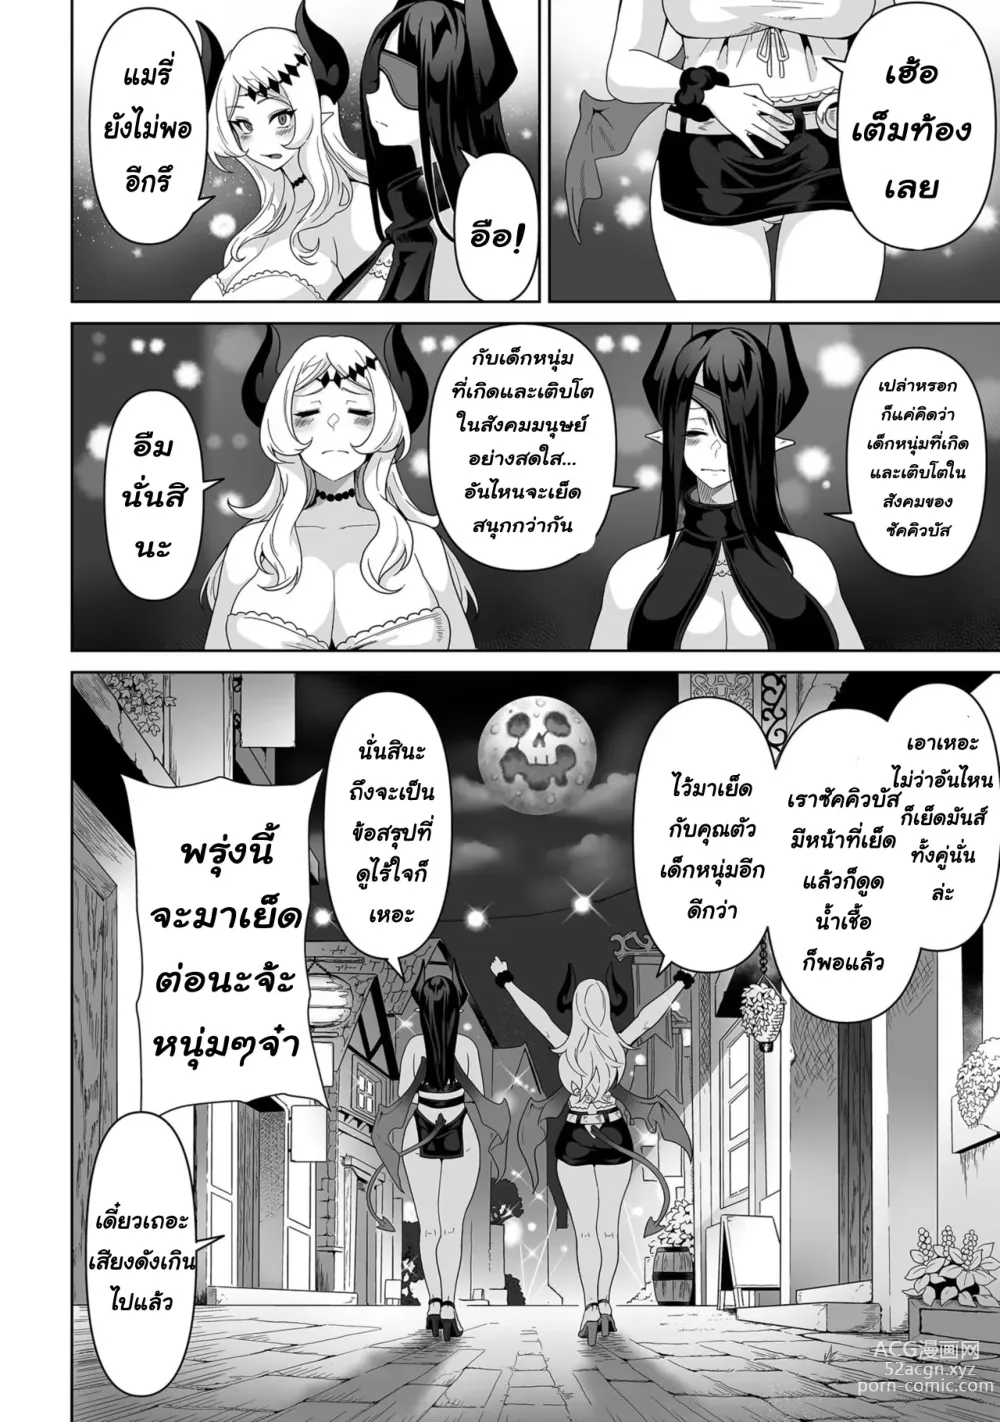 Page 25 of manga Sakyubasu kingudamu dai isekai kara kita shounen 2